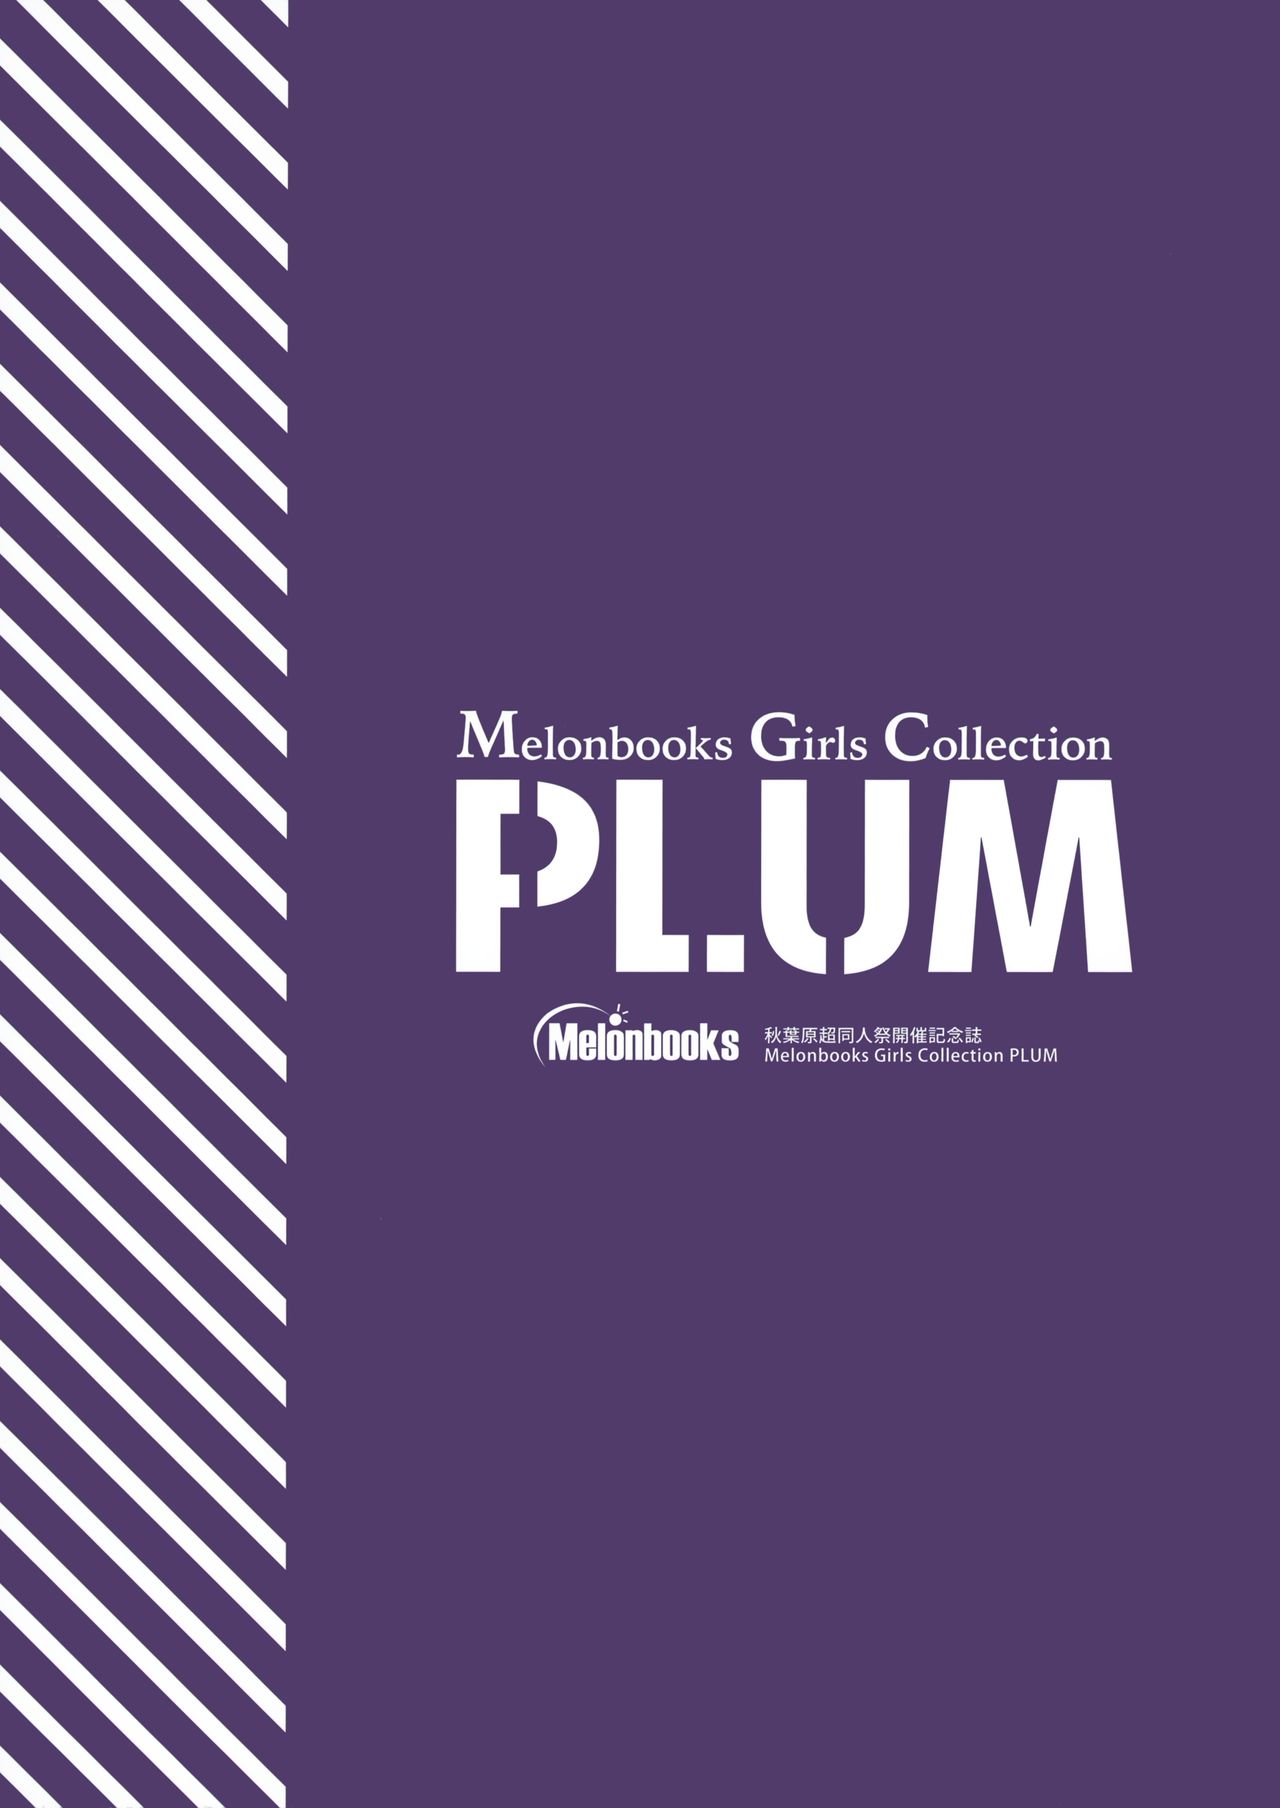 (2021年3月秋葉原超同人祭) 秋葉原超同人祭開催記念誌 Melonbooks Girls Collection Plum